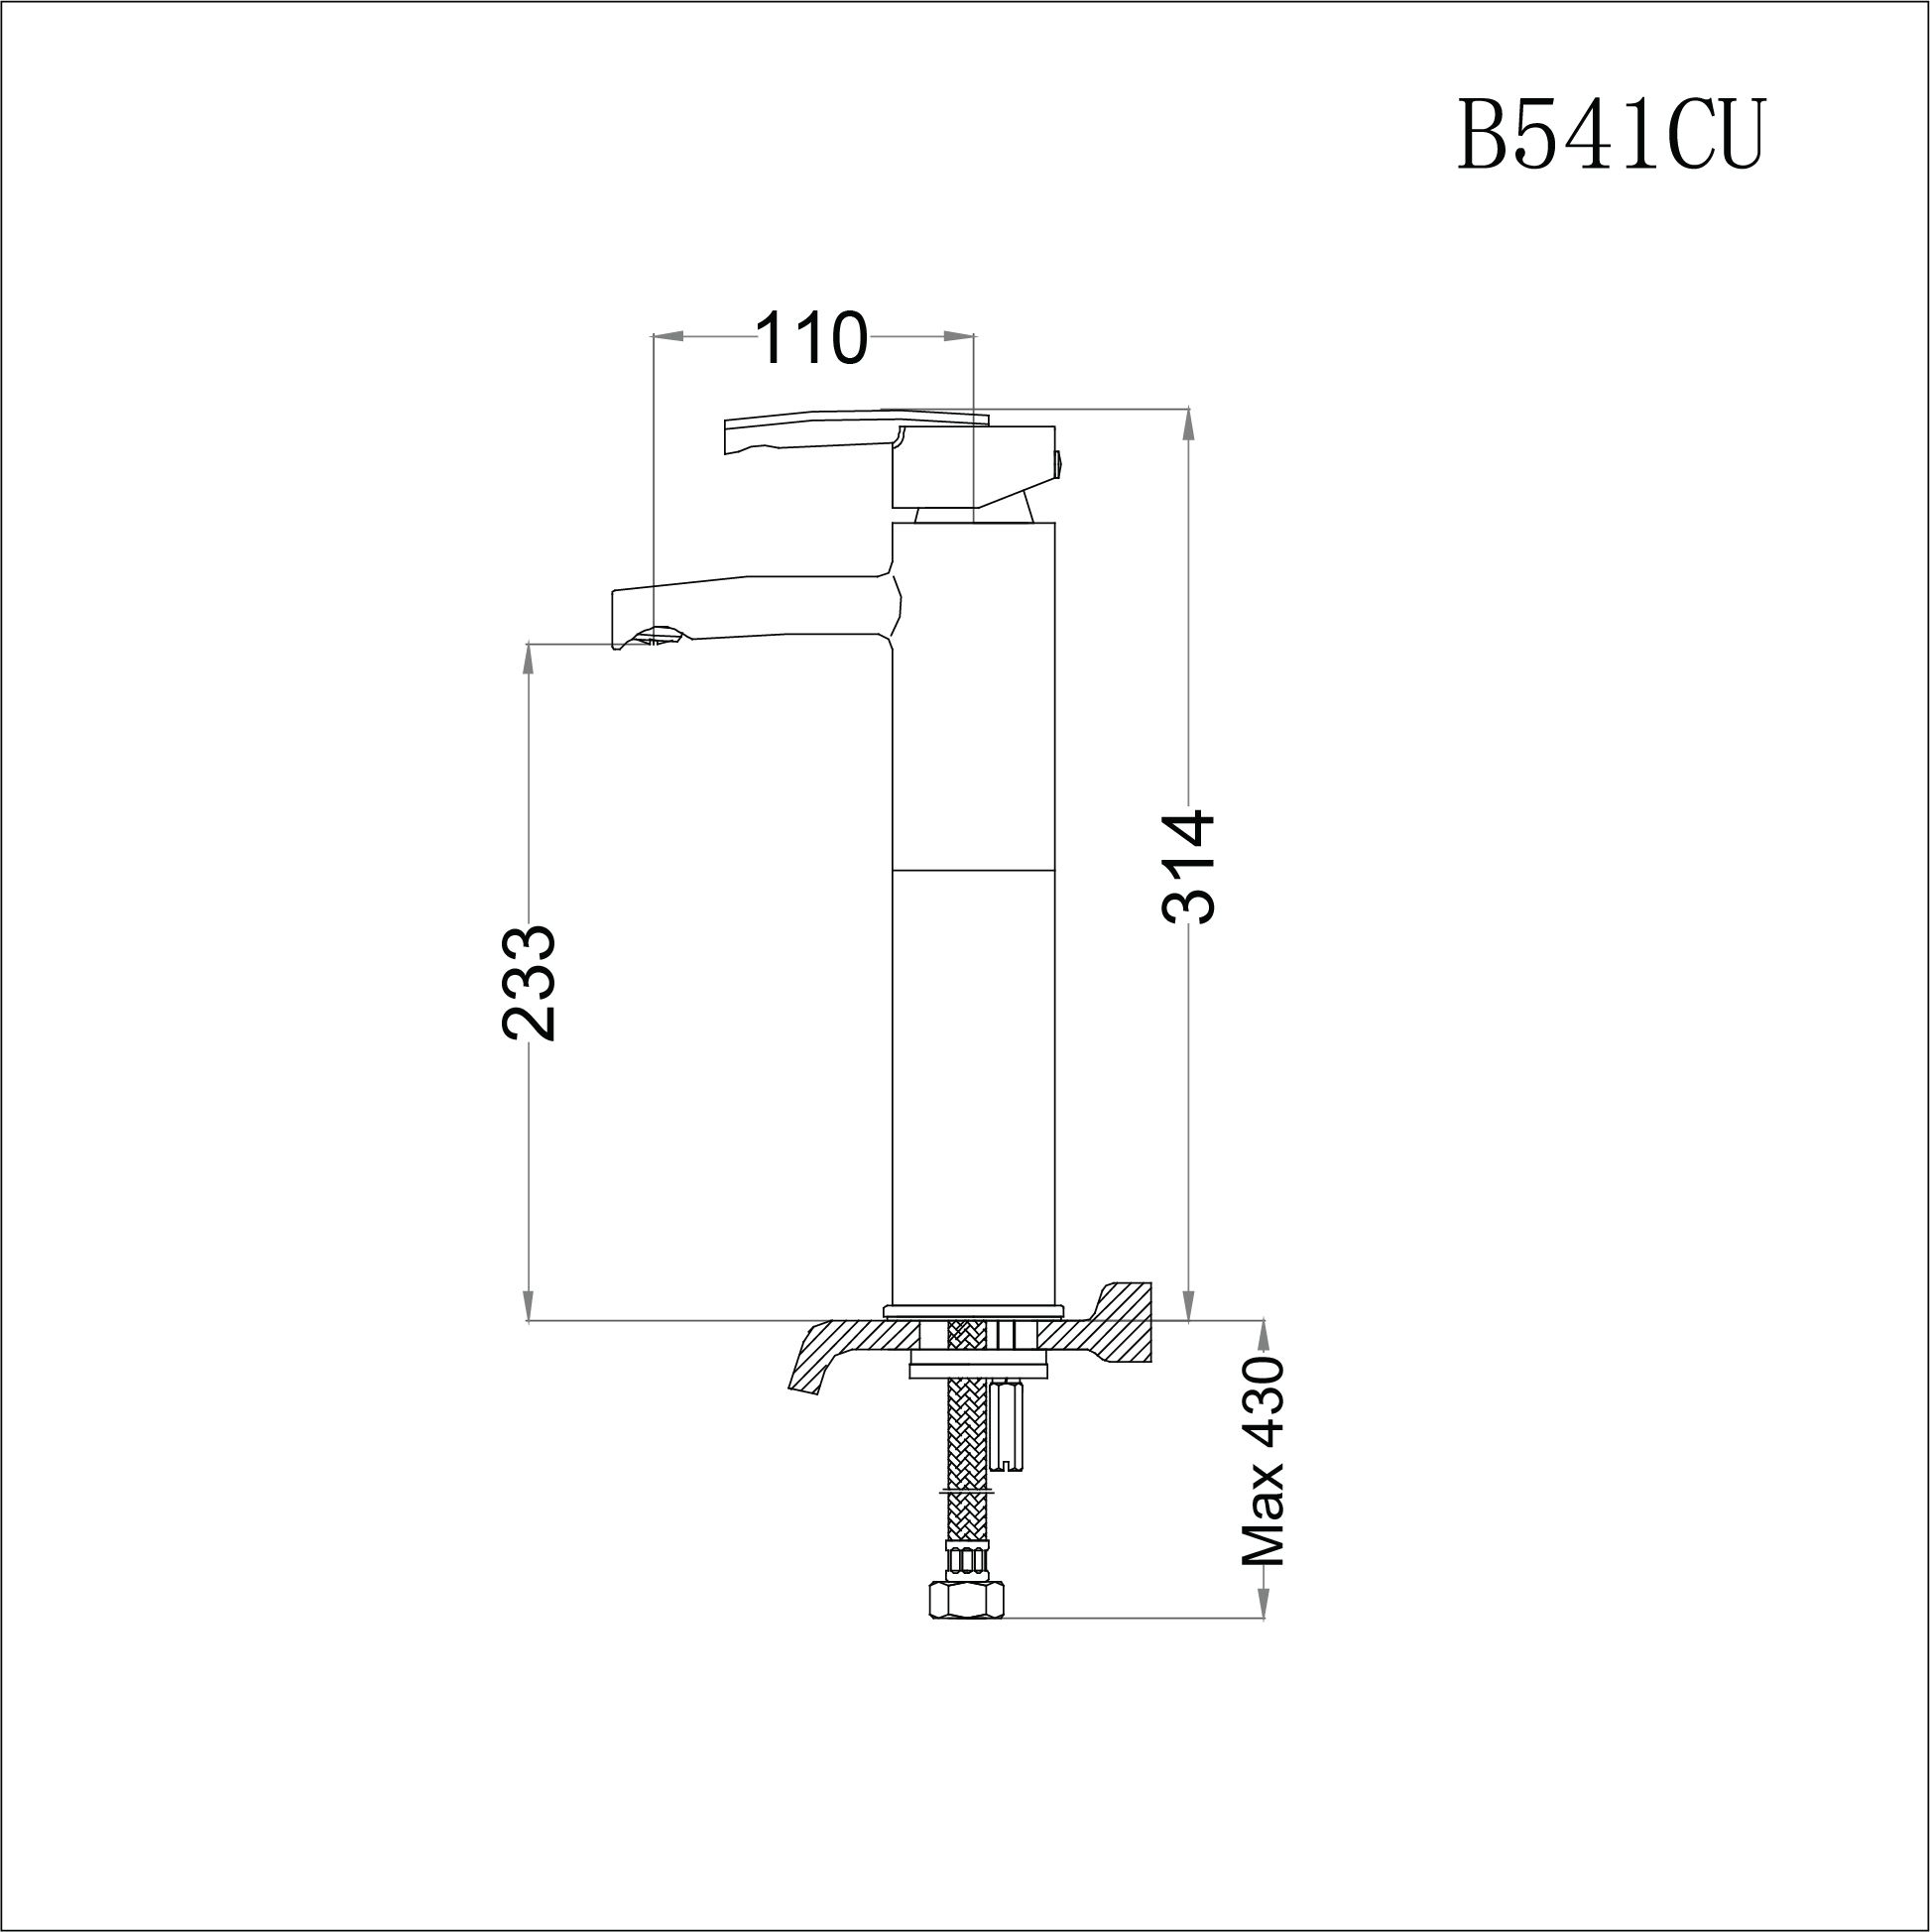  Vòi Lavabo Cao Nóng lạnh - B541CU 